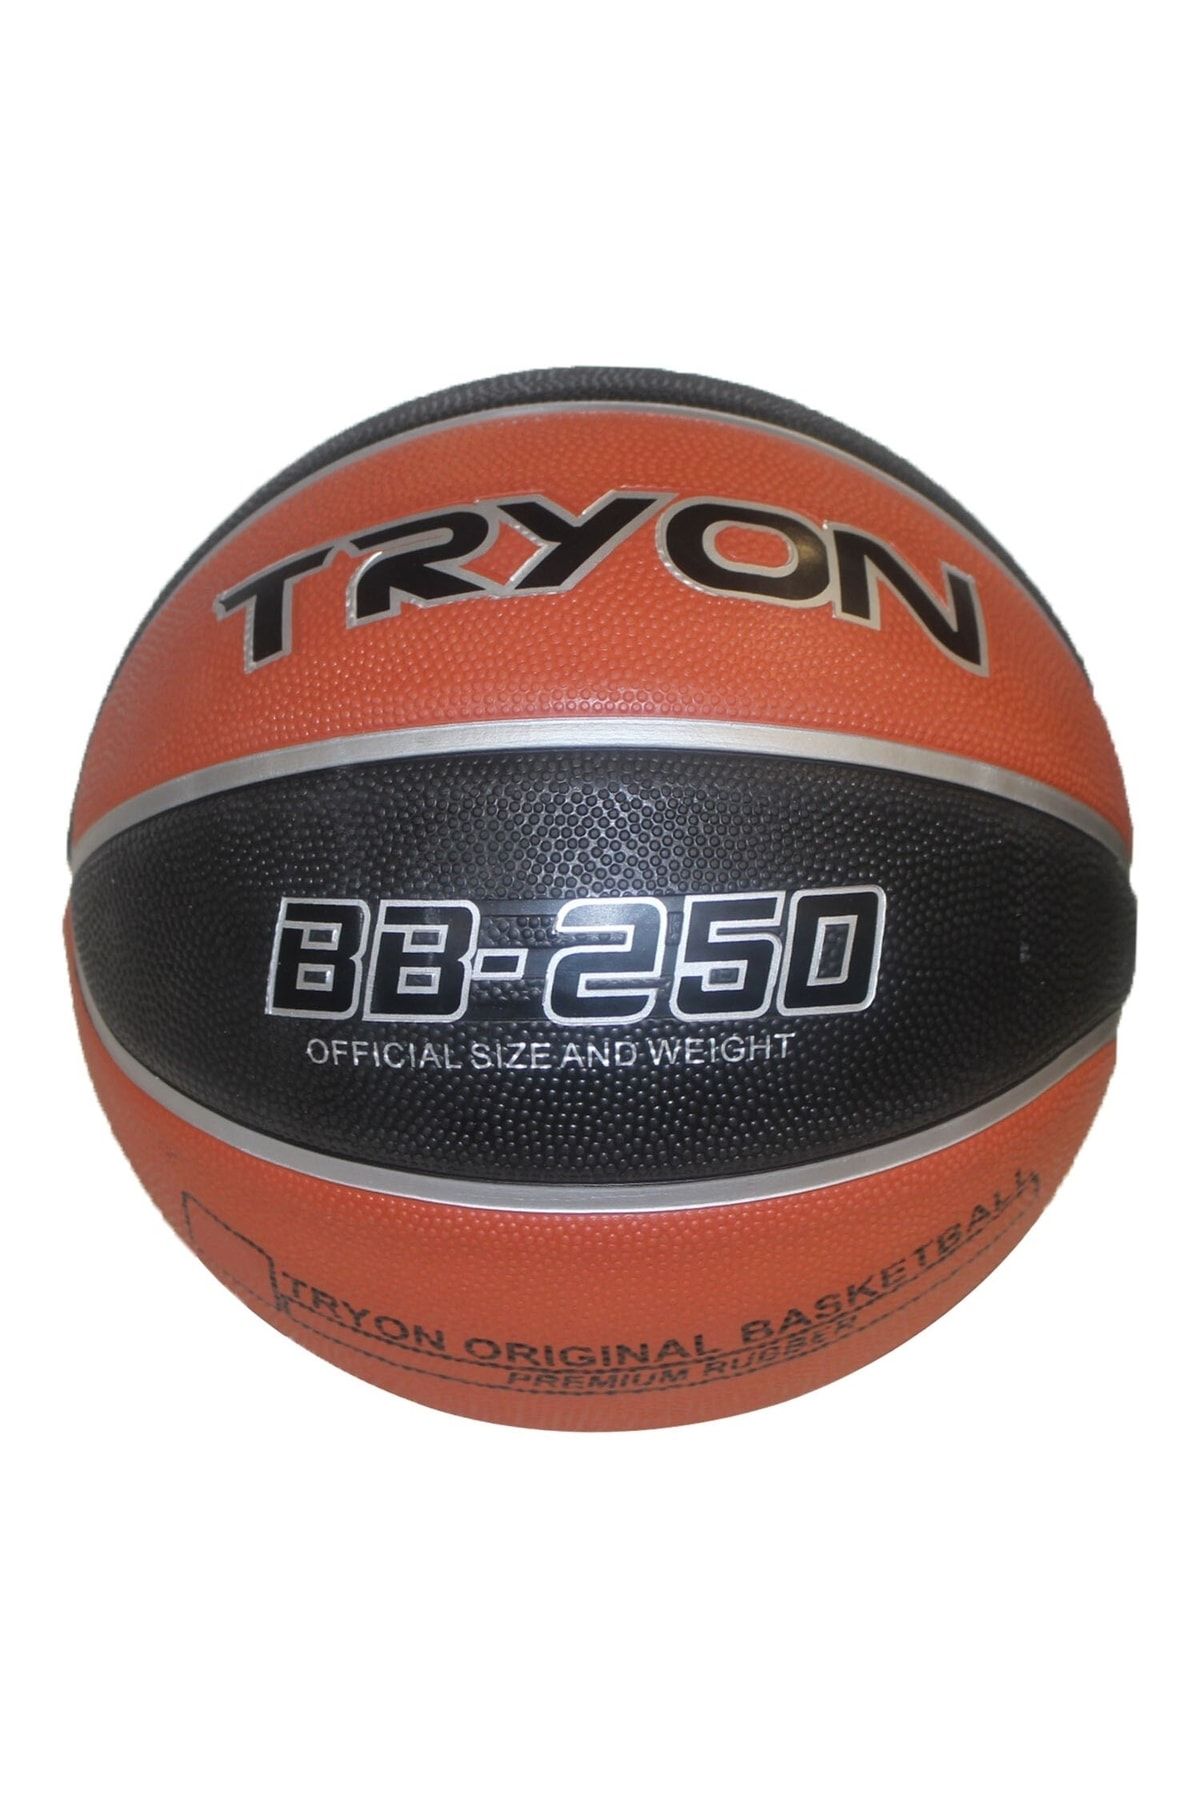 uhlsport Tryon Basketbol Topu Bb-250 Basketbol Topu